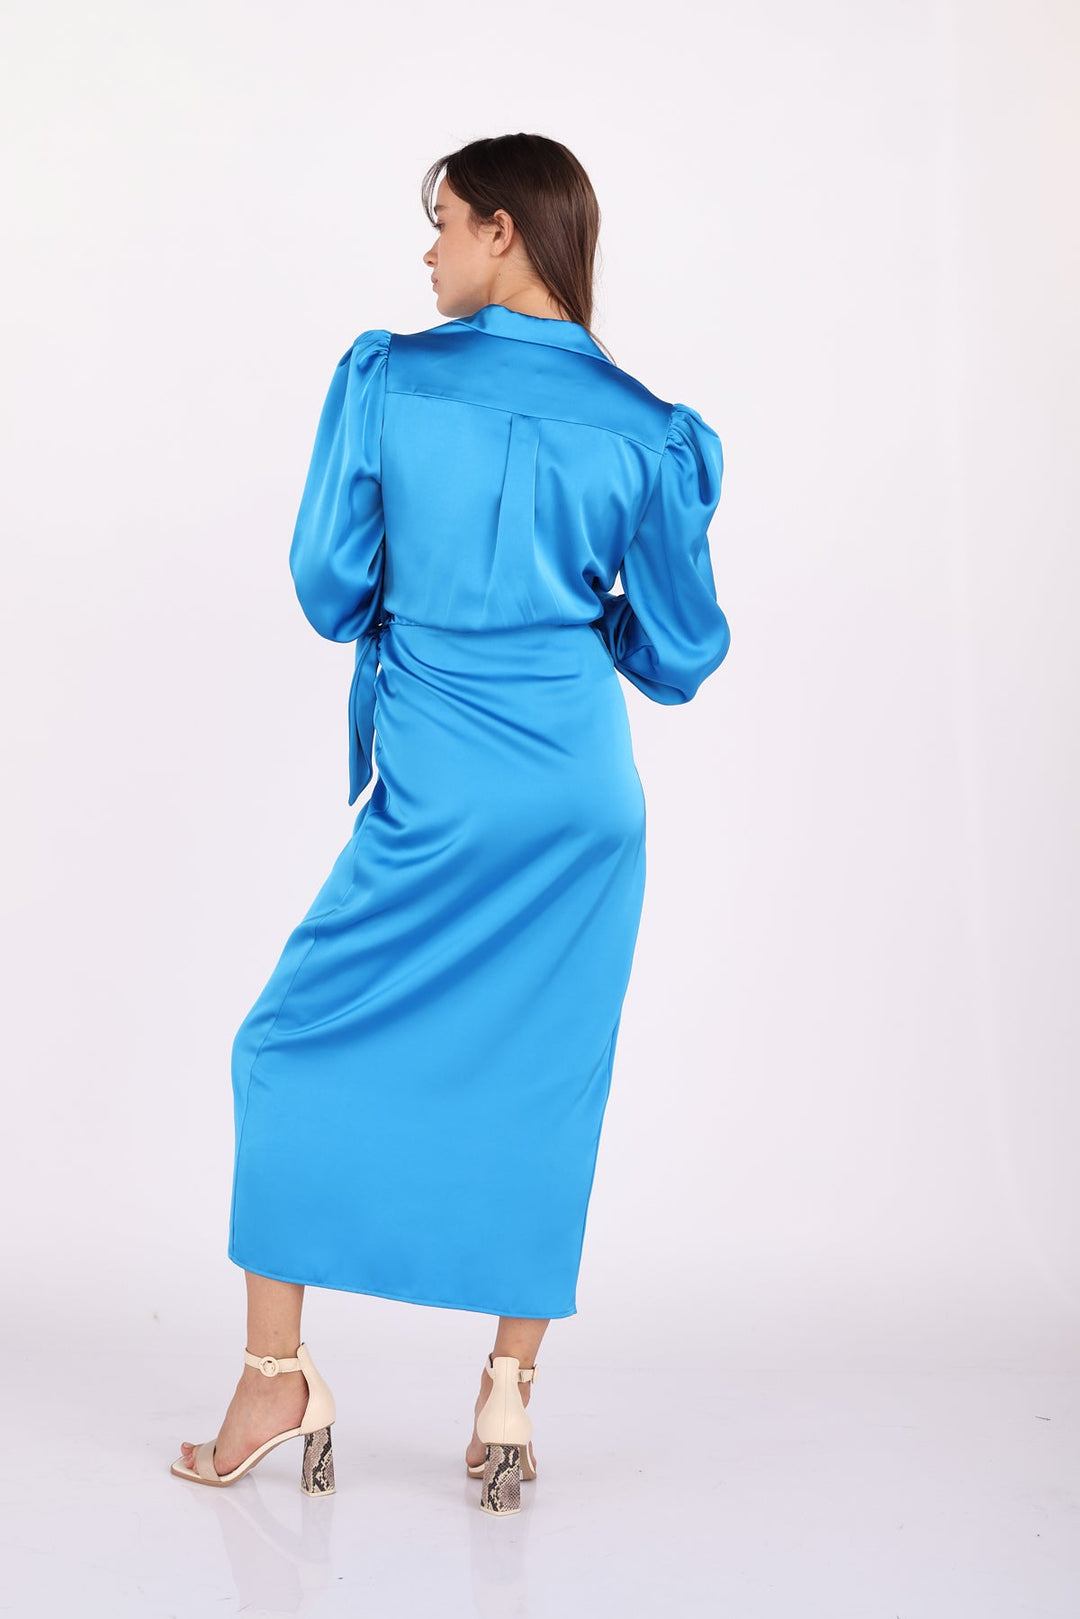 שמלת אלאניס בצבע טורקיז - Dana Sidi